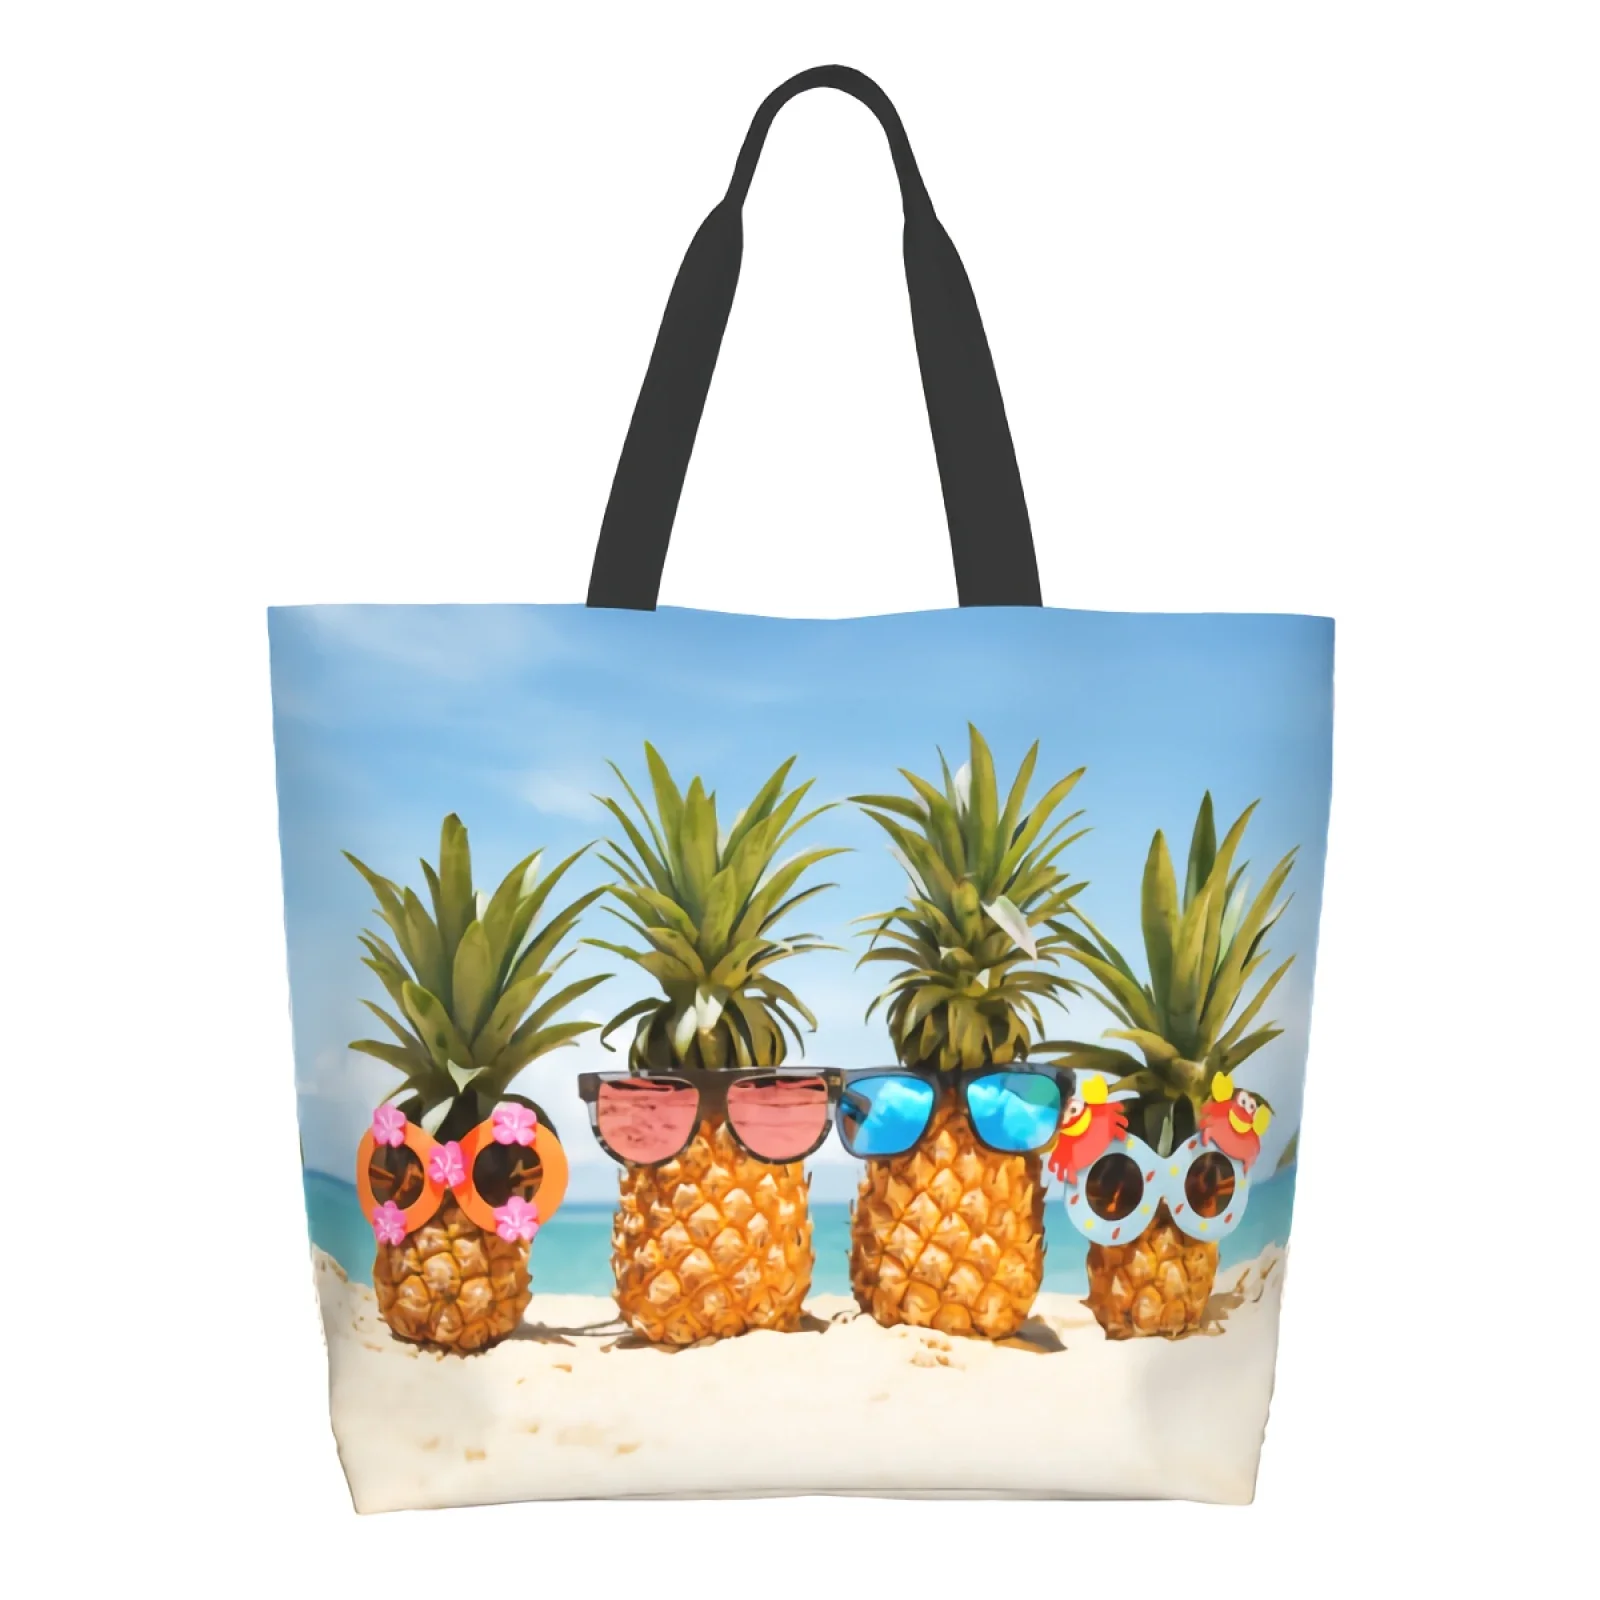 

Многоразовая пляжная сумка-тоут с принтом ананасов, летняя тропическая сумка для покупок, повседневный легкий вместительный тоут на плечо